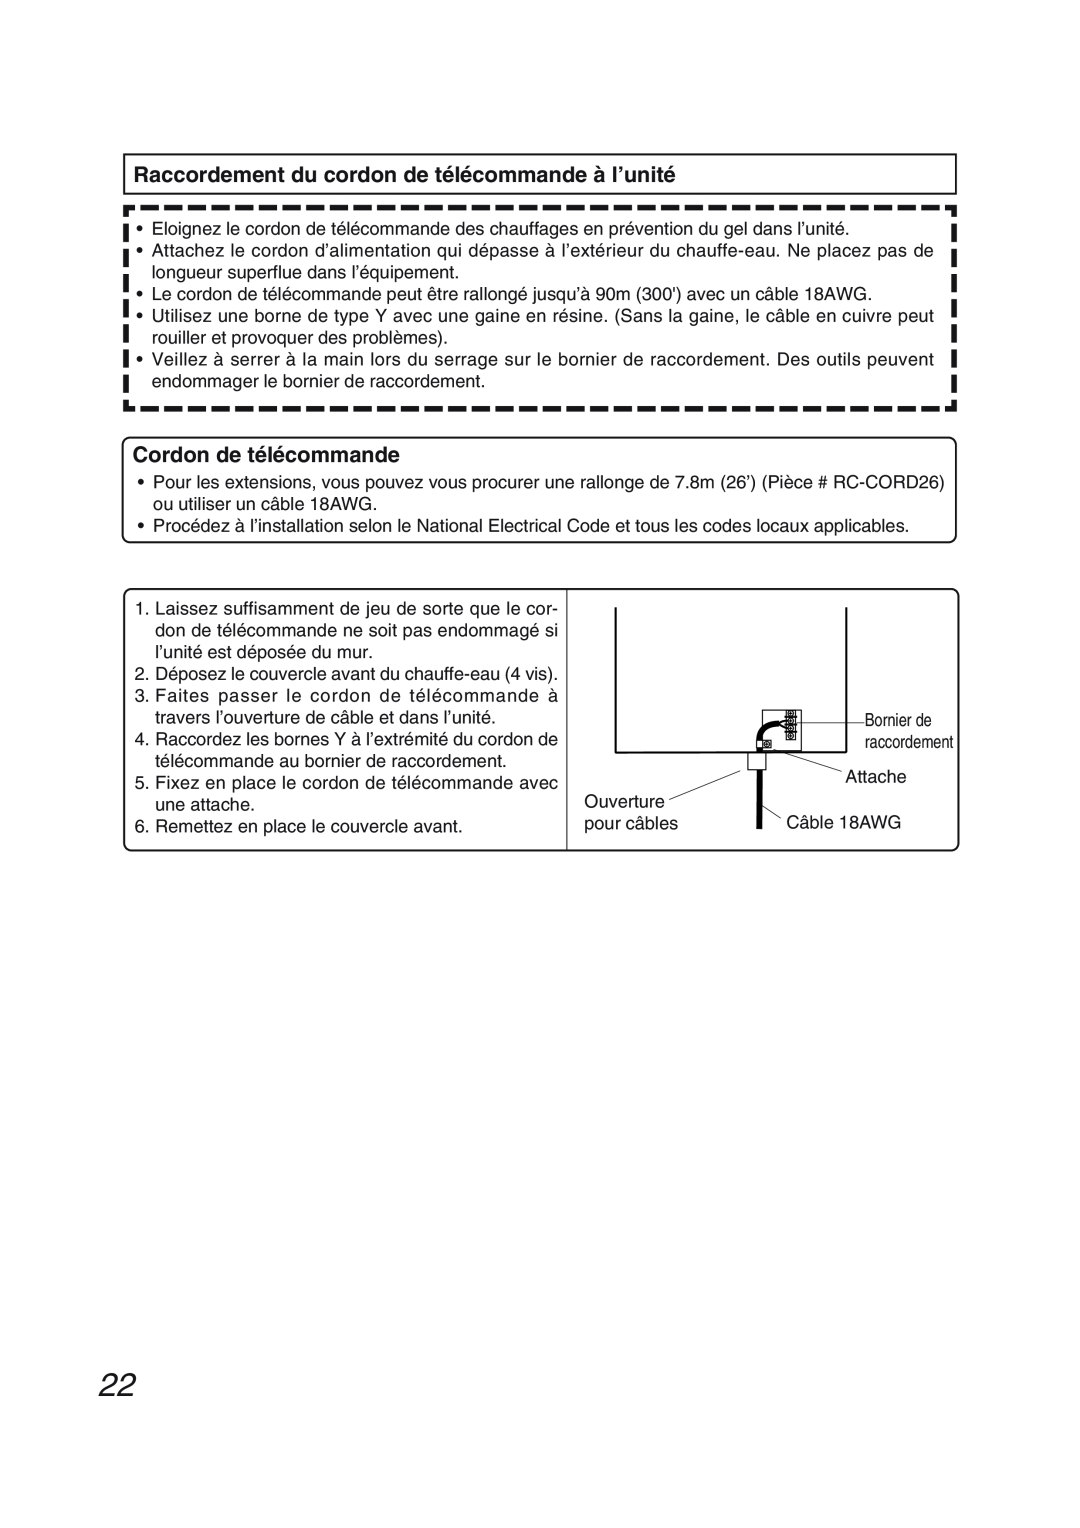 Pentax N-0751M-OD installation manual Raccordement du cordon de télécommande à l’unité, Cordon de télécommande 